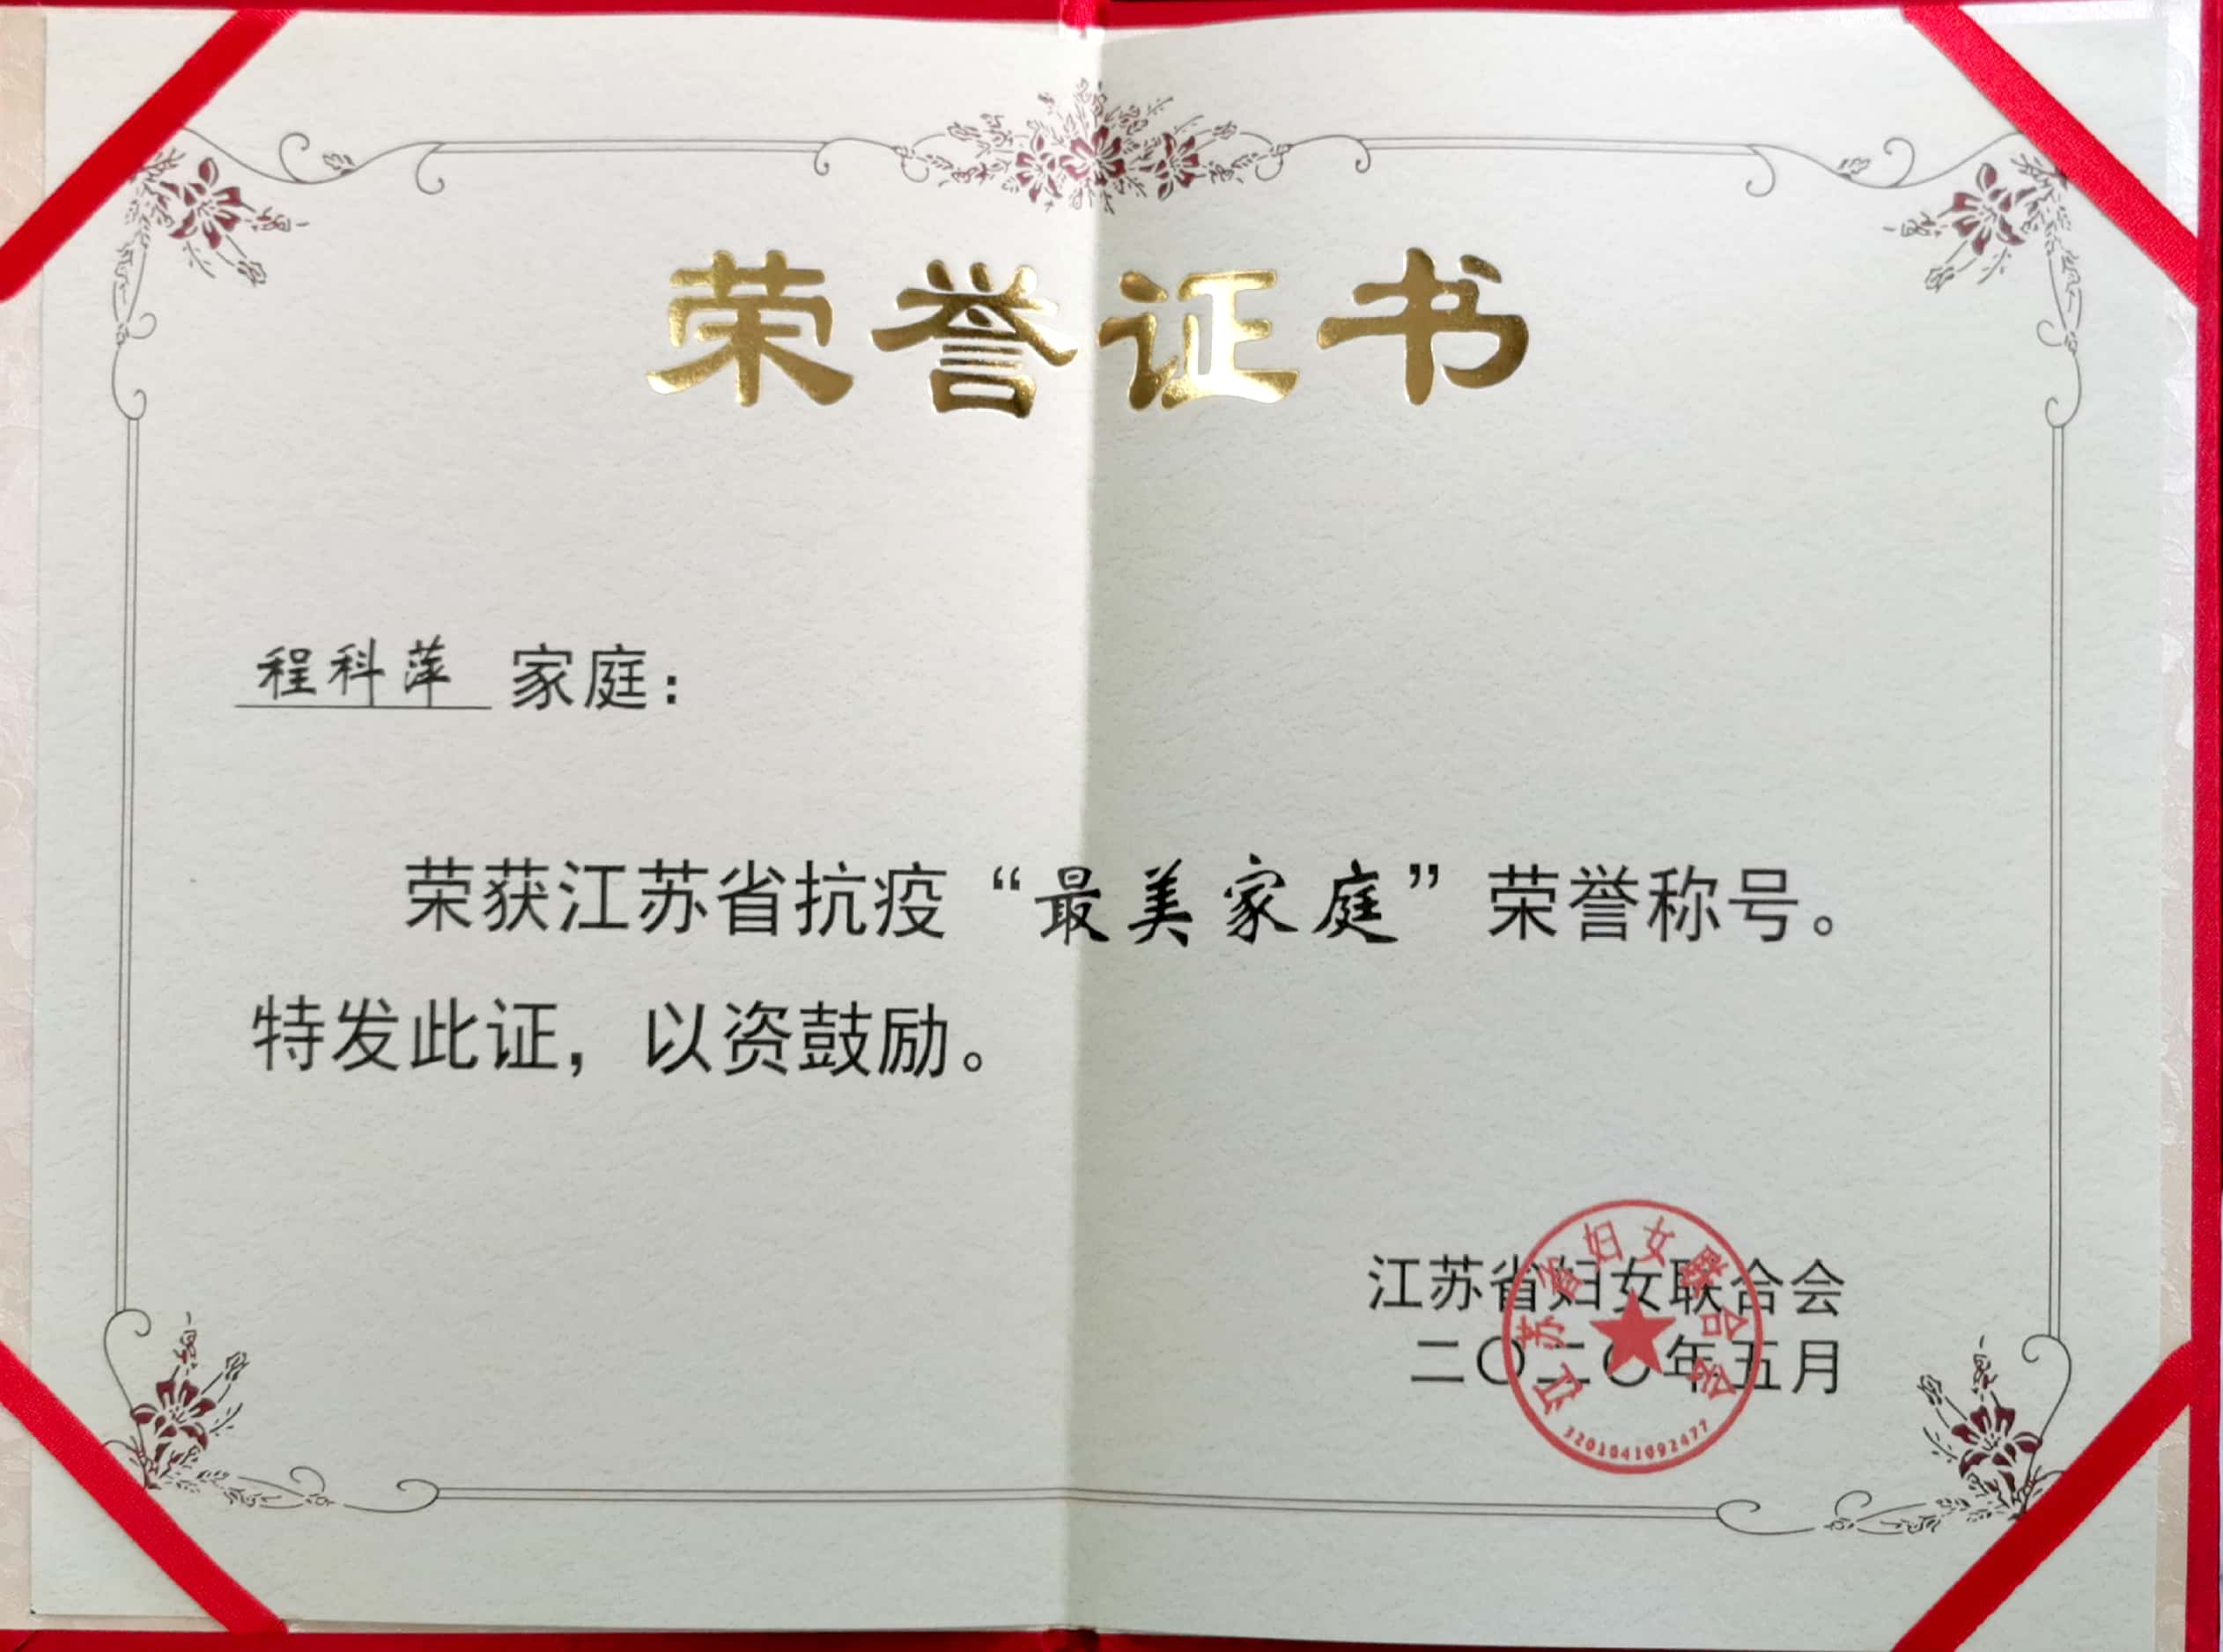 程科萍家庭喜获江苏省抗疫最美家庭荣誉称号